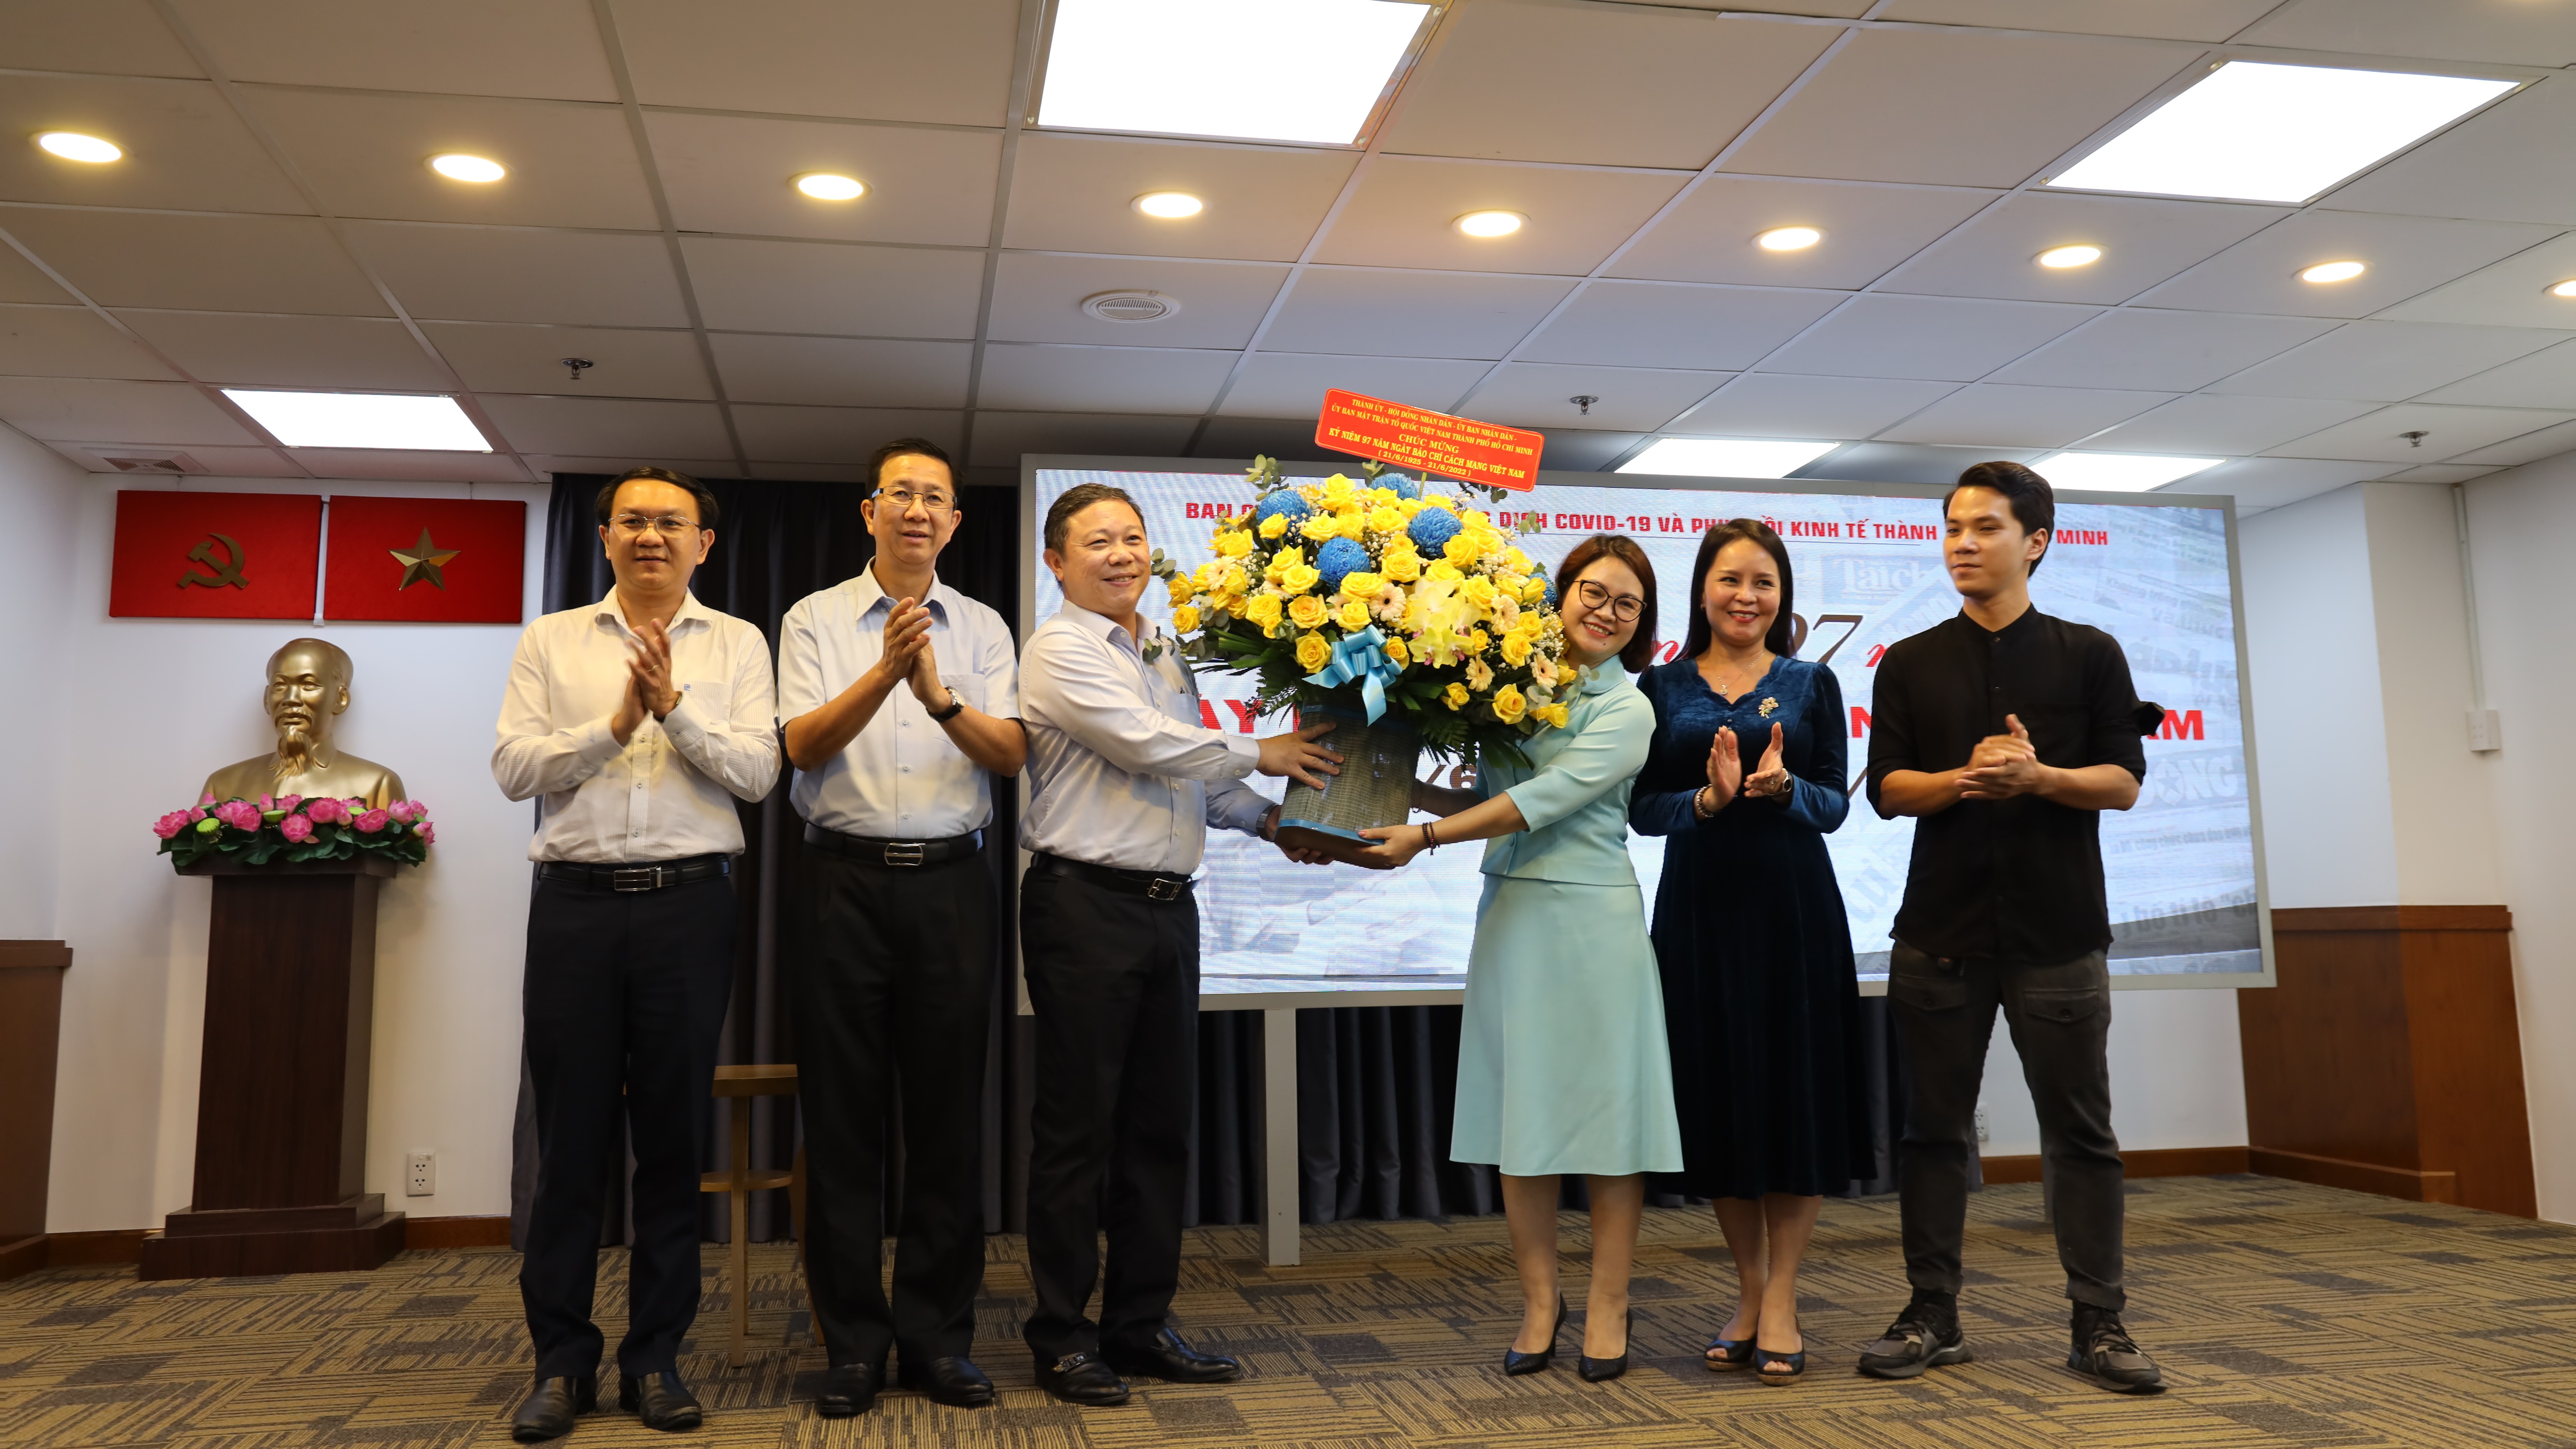 Lãnh đạo TPHCM tặng hoa cho Trung tâm báo chí cùng các nhà báo, phóng viên - Ảnh: Linh Nhi